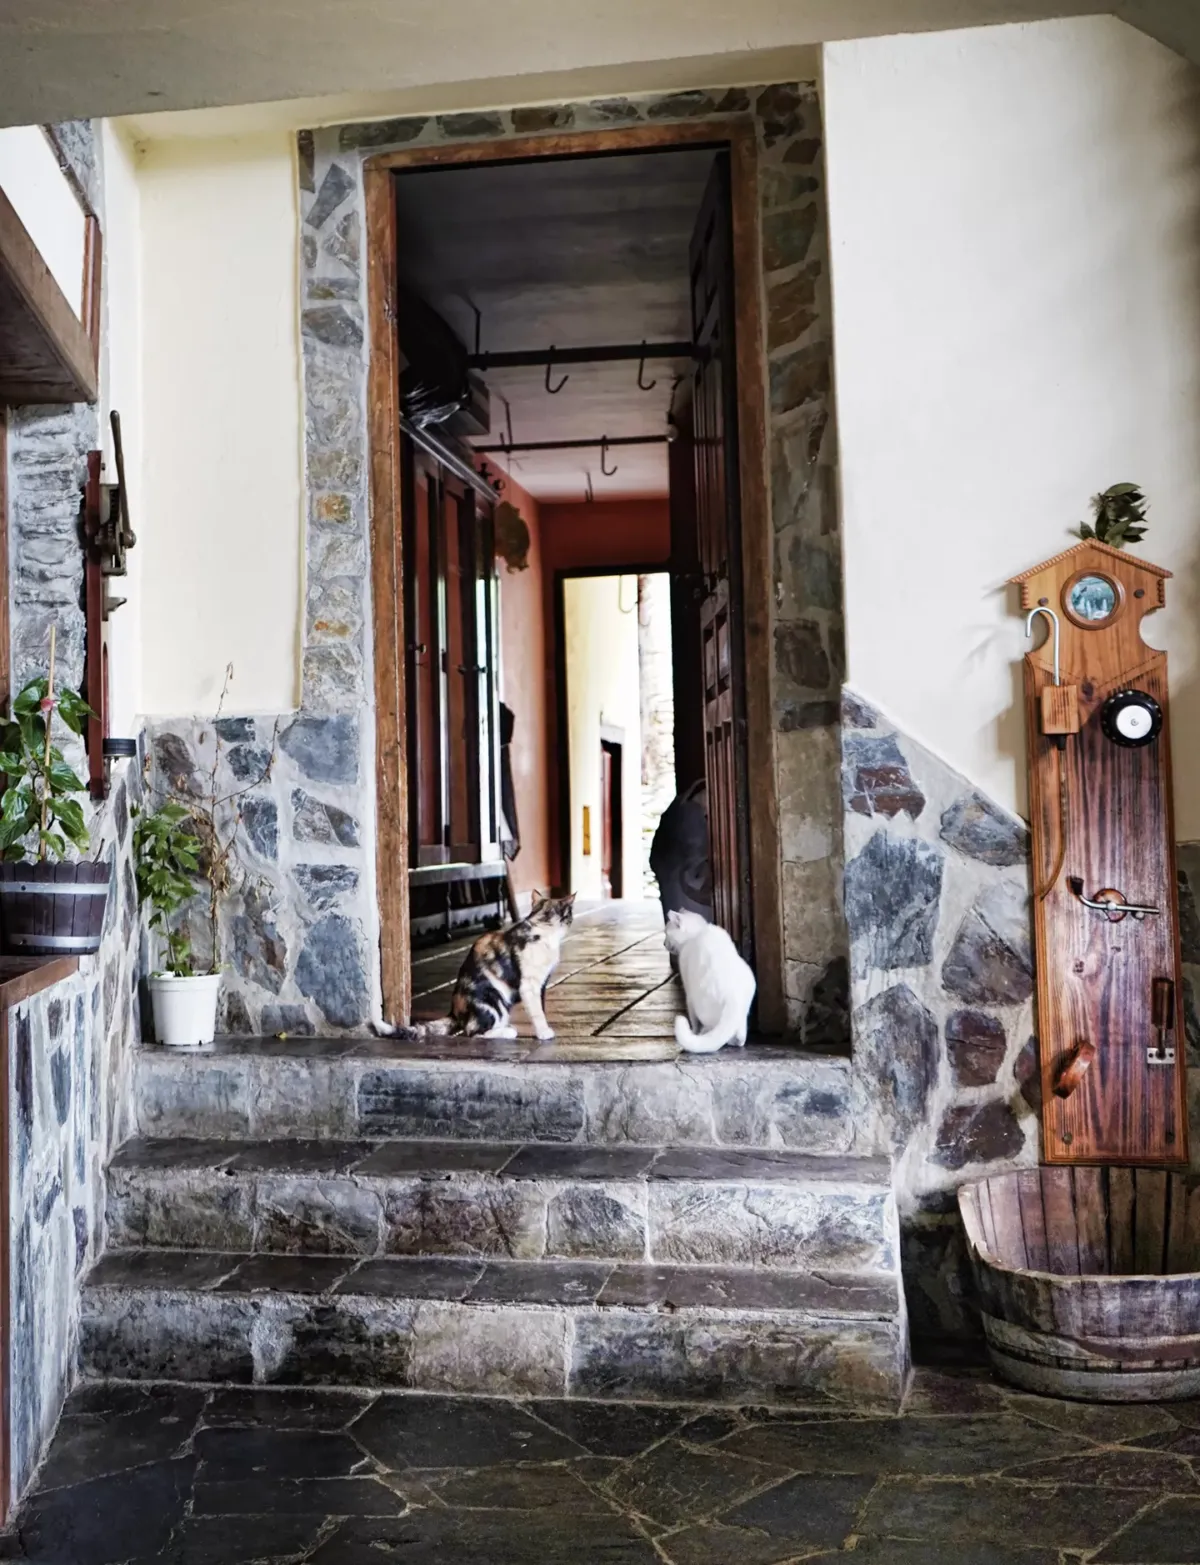 Entrada a la casa con la puerta abierta donde se encuentran dos gatos sentados